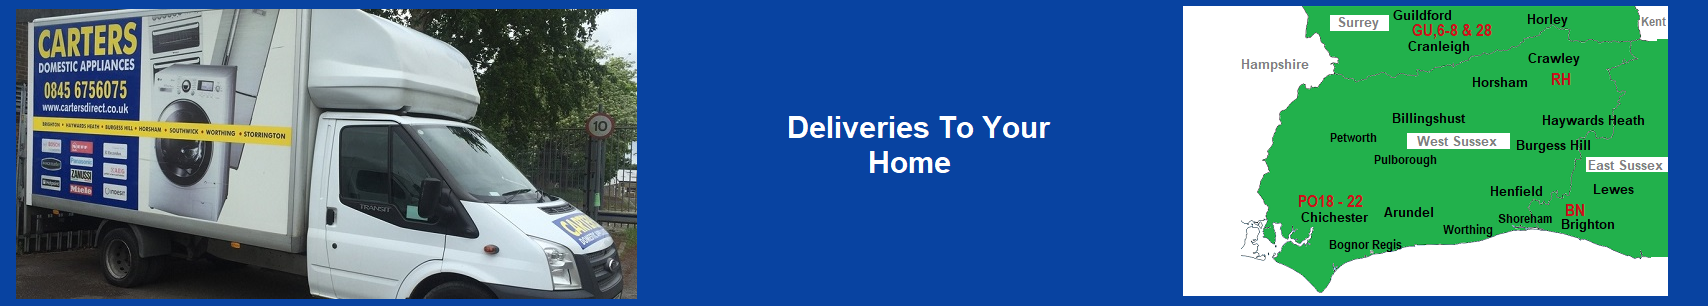 Deliveries Information